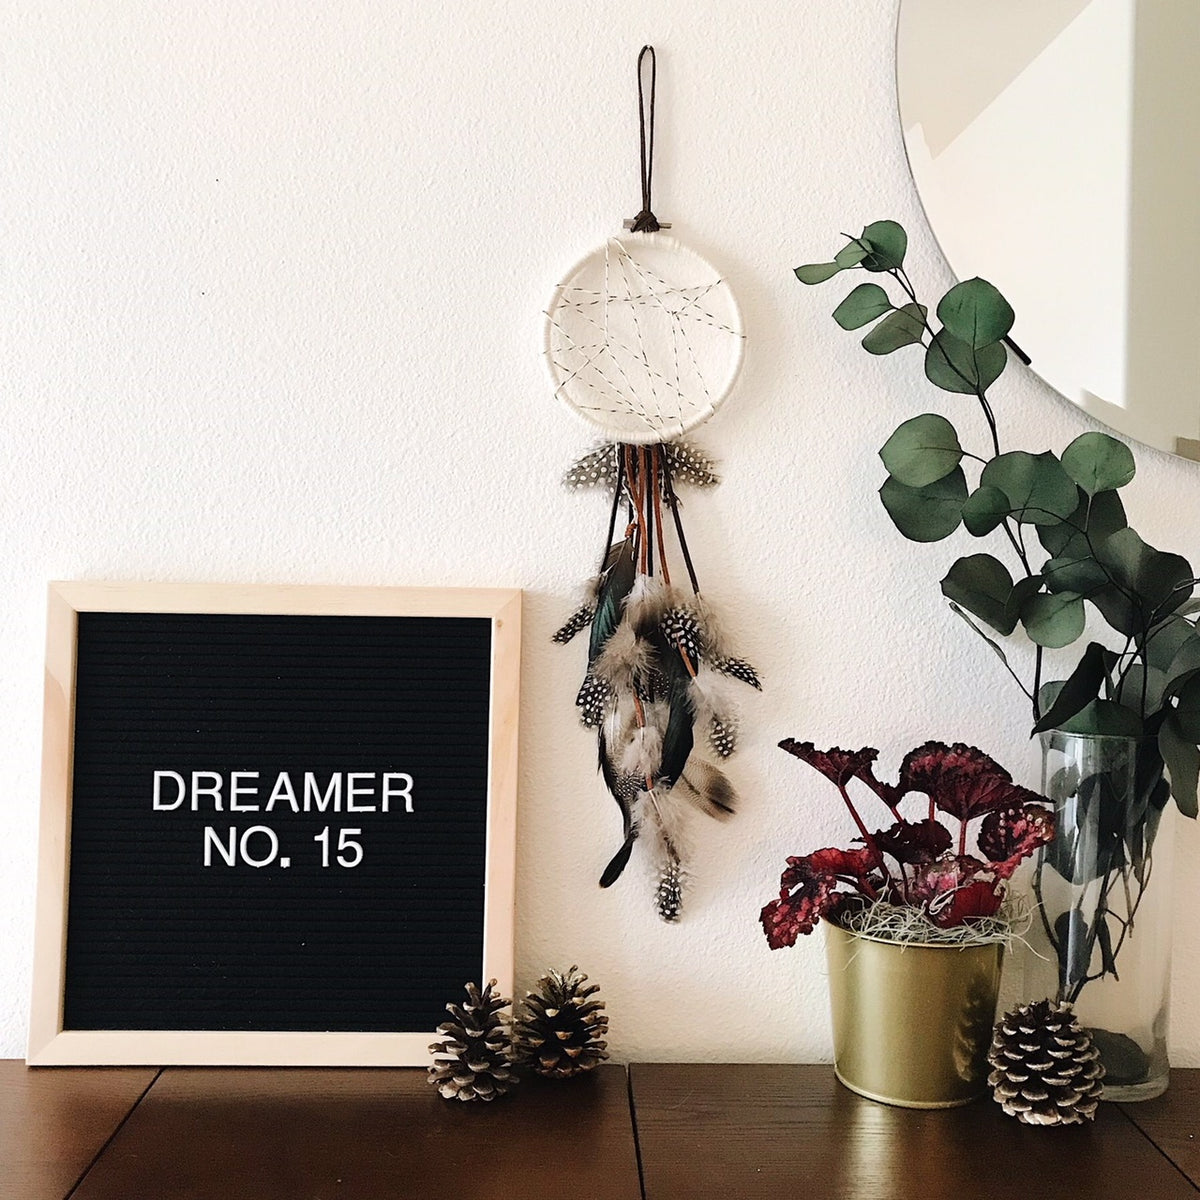 Dreamer No. 15 | 100 Days of Dreamers